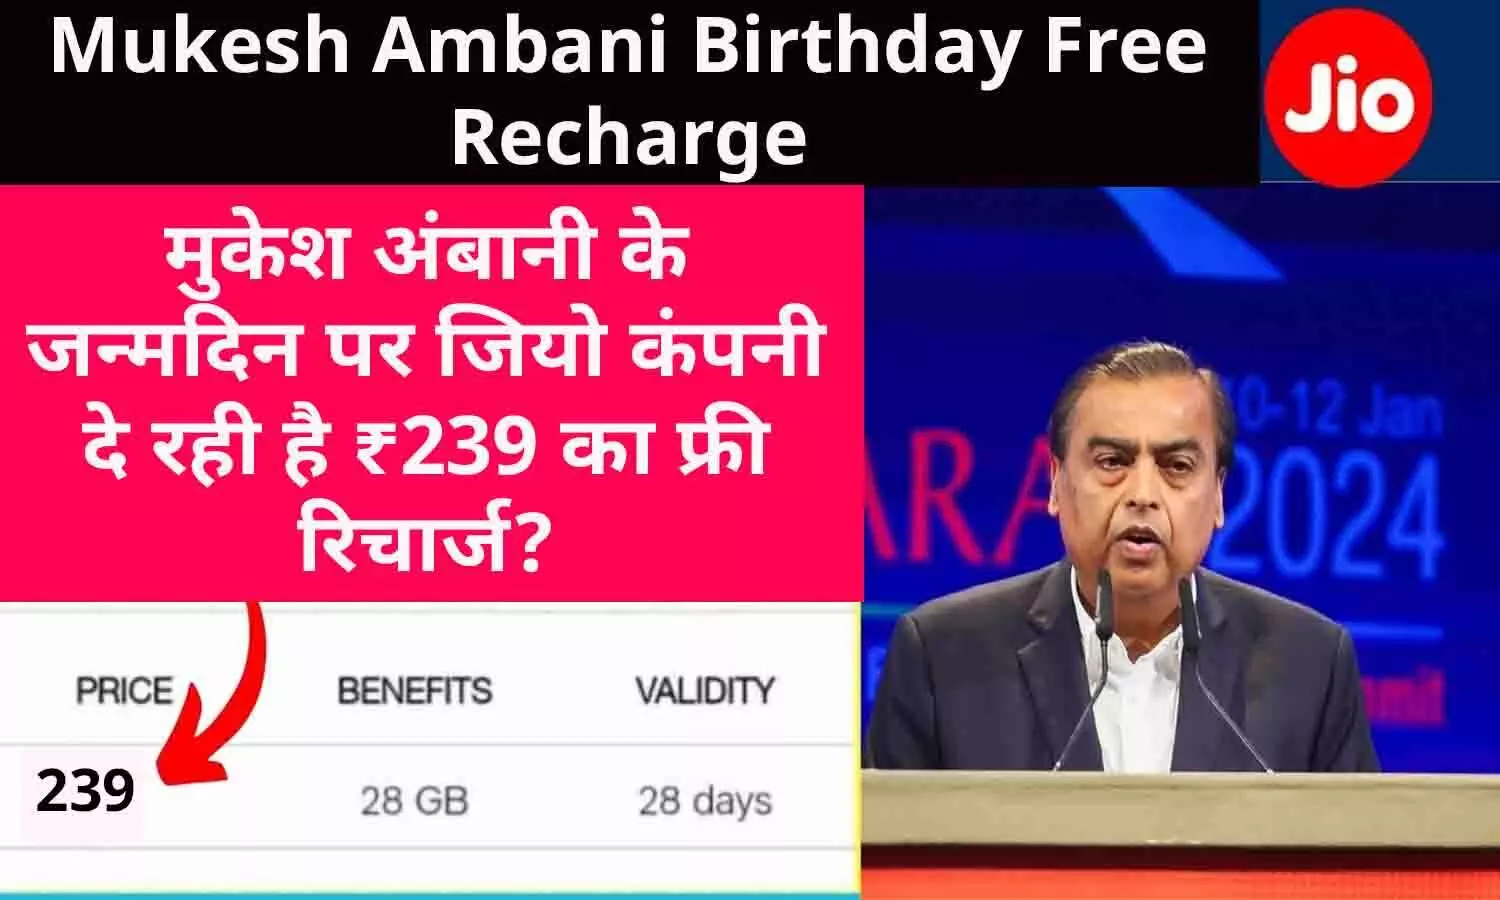 Mukesh Ambani Birthday Free Recharge: बड़ा ऐलान! मुकेश अंबानी के जन्मदिन पर जियो कंपनी दे रही है ₹239 का फ्री रिचार्ज? जानिए पूरी सच्चाई...